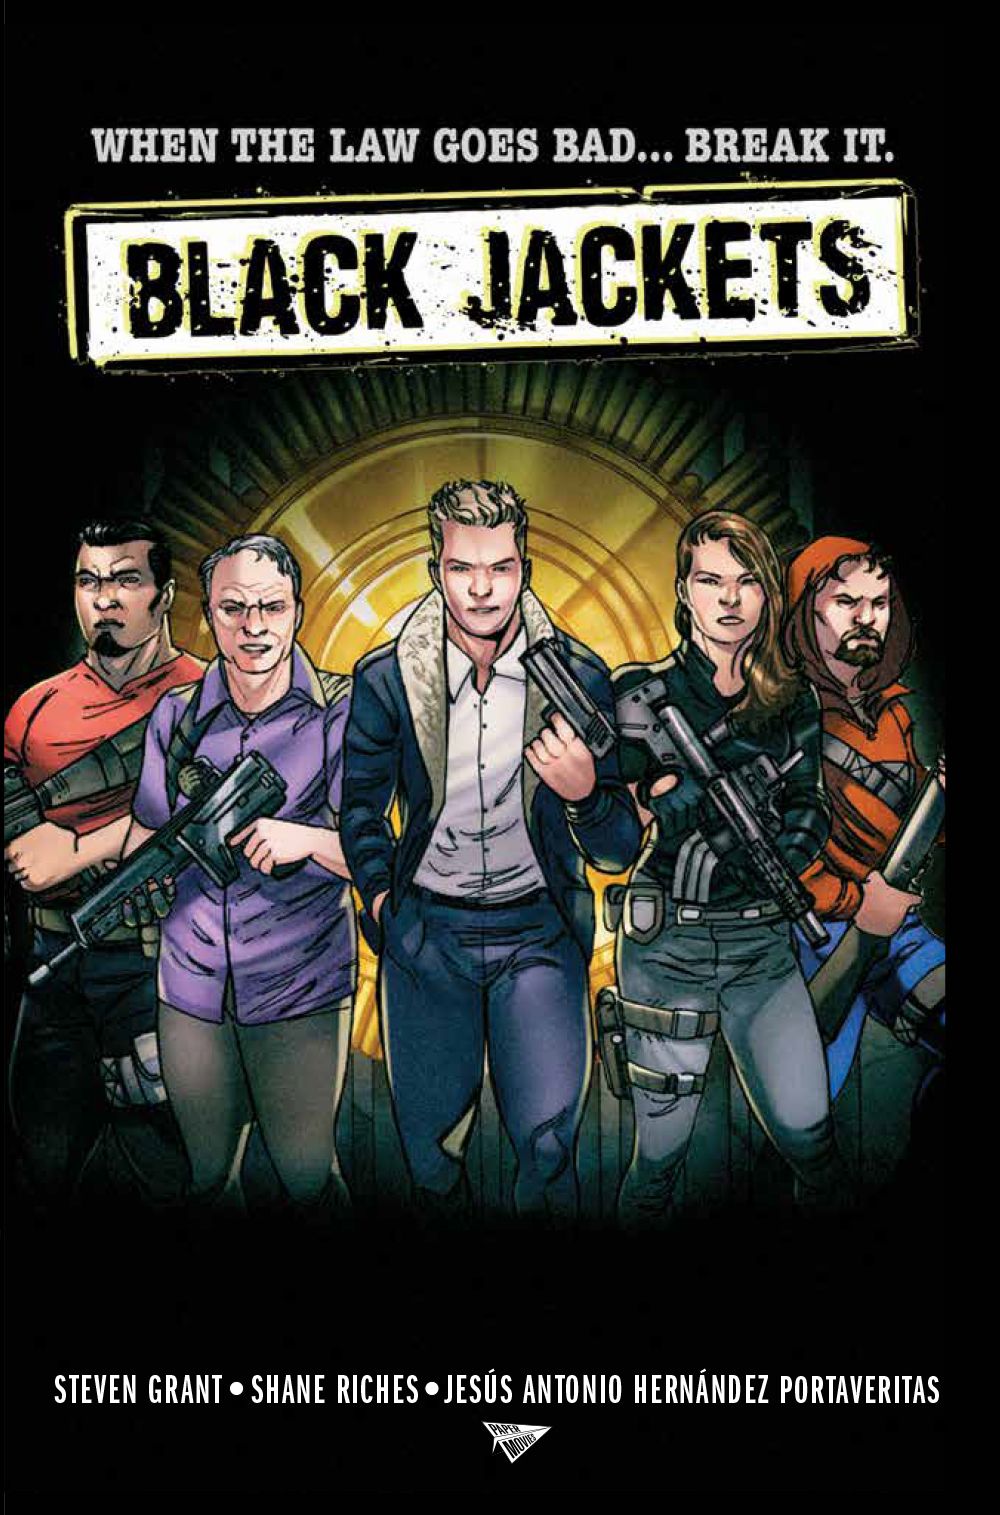 EXCLUSIVO: Criadores de Black Jackets Steven Grant e Shane Riches falam sobre novo livro político 7